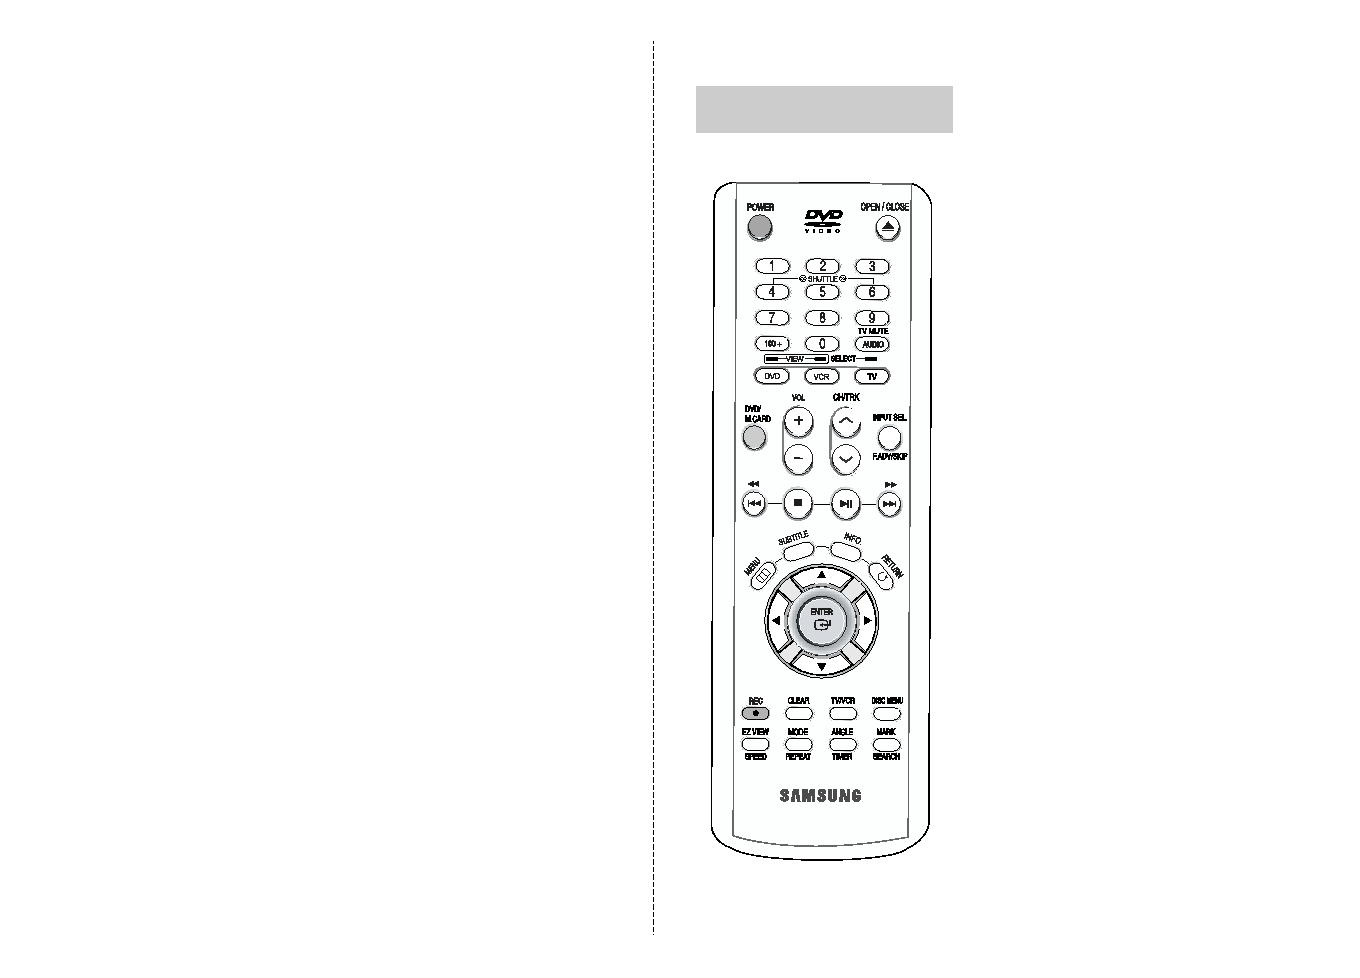 Samsung DVD-V8500 User Manual (ver.1.0)